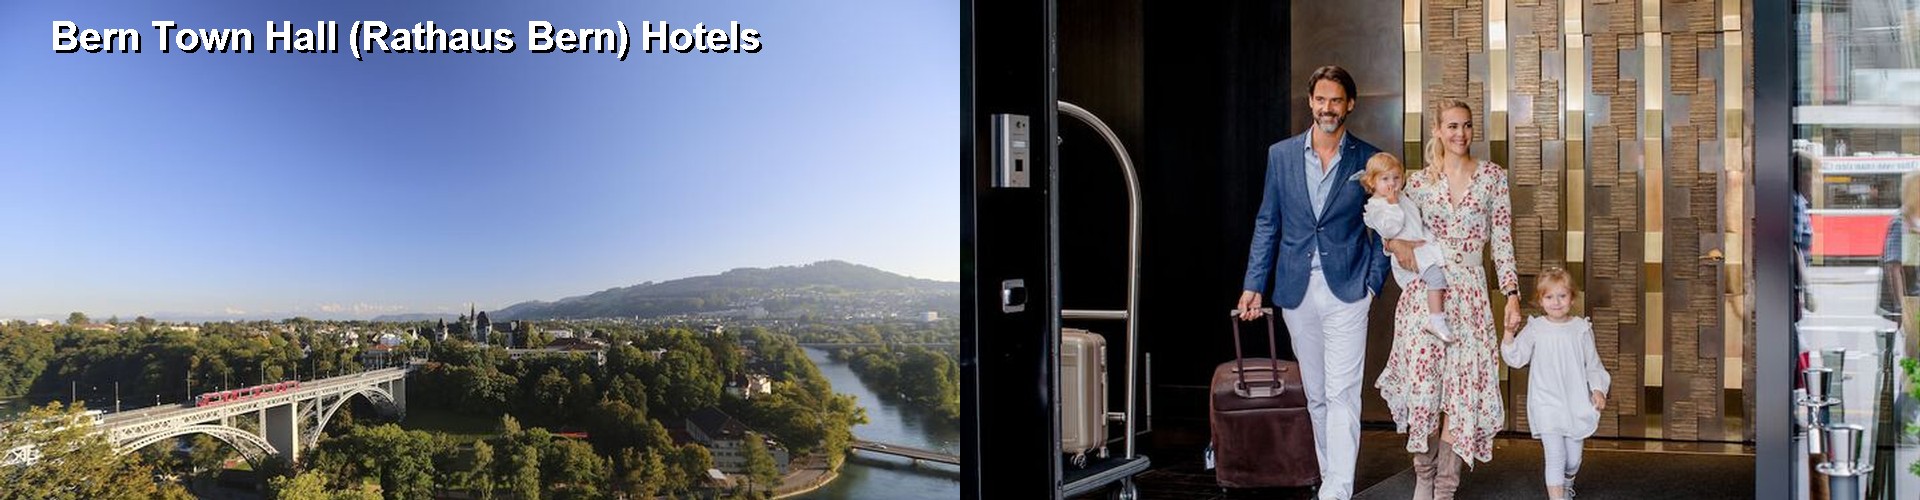 5 Best Hotels near Bern Town Hall (Rathaus Bern)